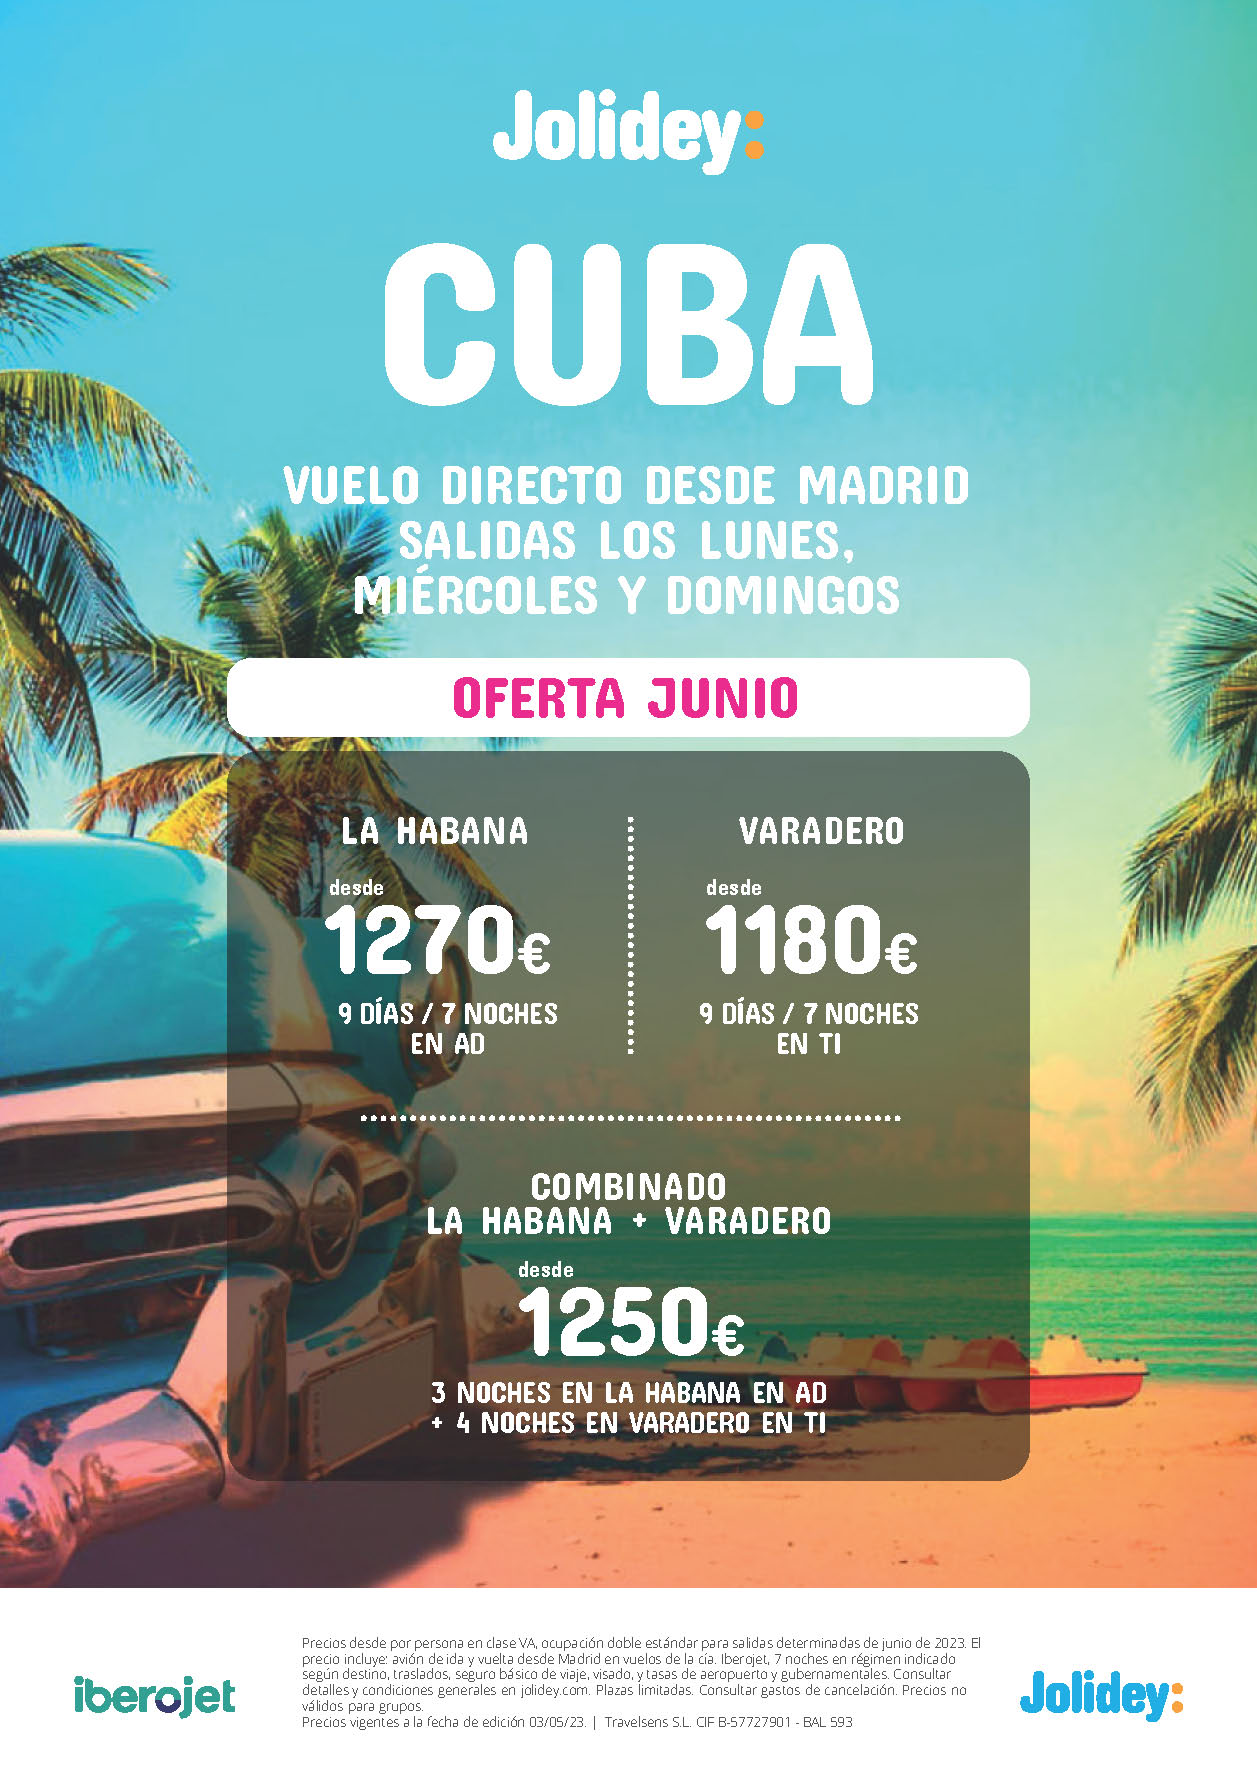 Oferta Jolidey Junio 2023 Cuba Combinado La Habana Varadero 9 dias Todo Incluido salida en vuelo directo desde Madrid